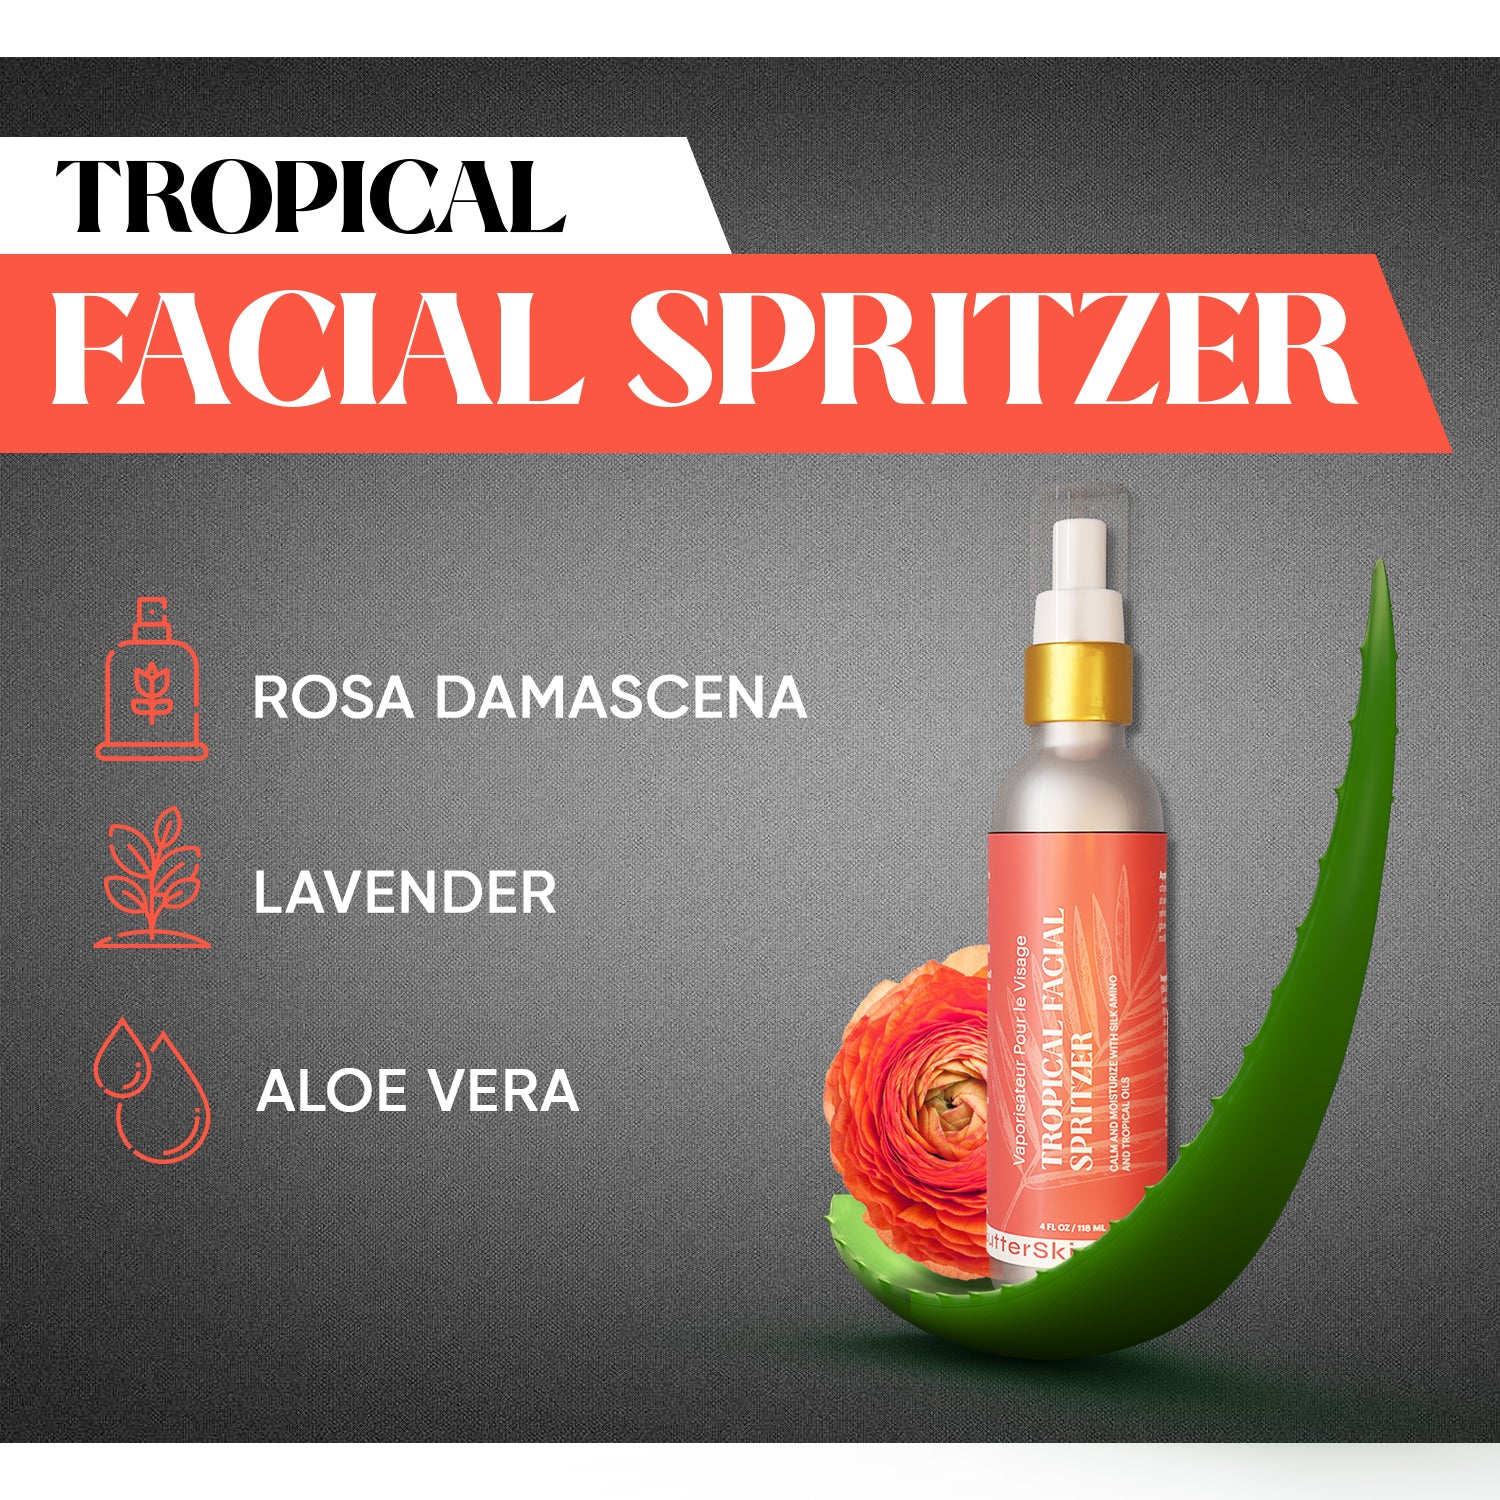 Tropical Facial Spritzer